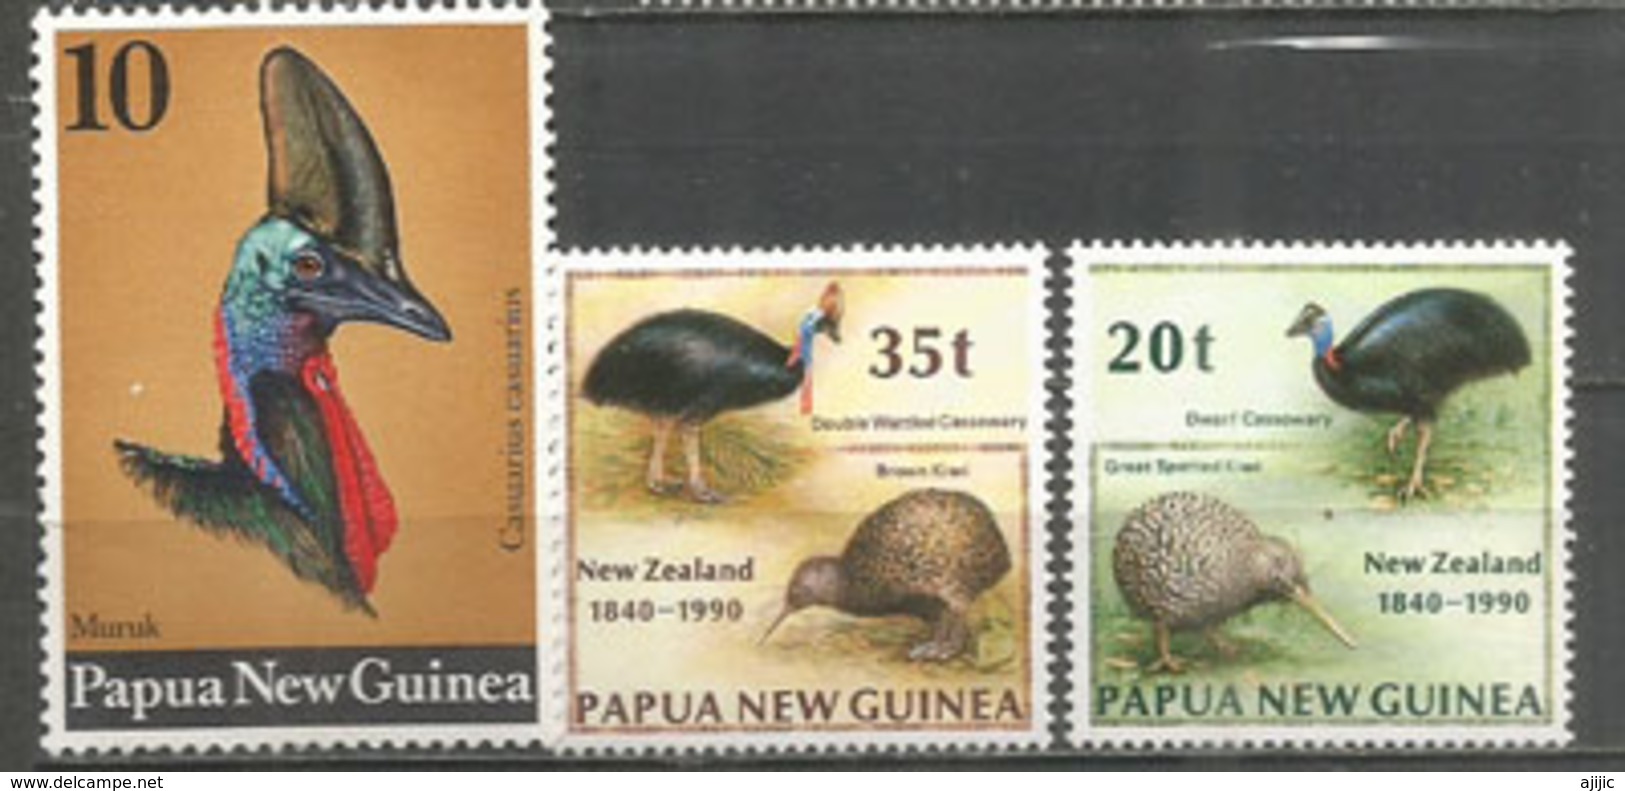 Le Casoar à Casque De Papouasie.  3 Timbres Neufs ** (PAPUA NEW-GUINEA) Côte 10.00 € - Struzzi